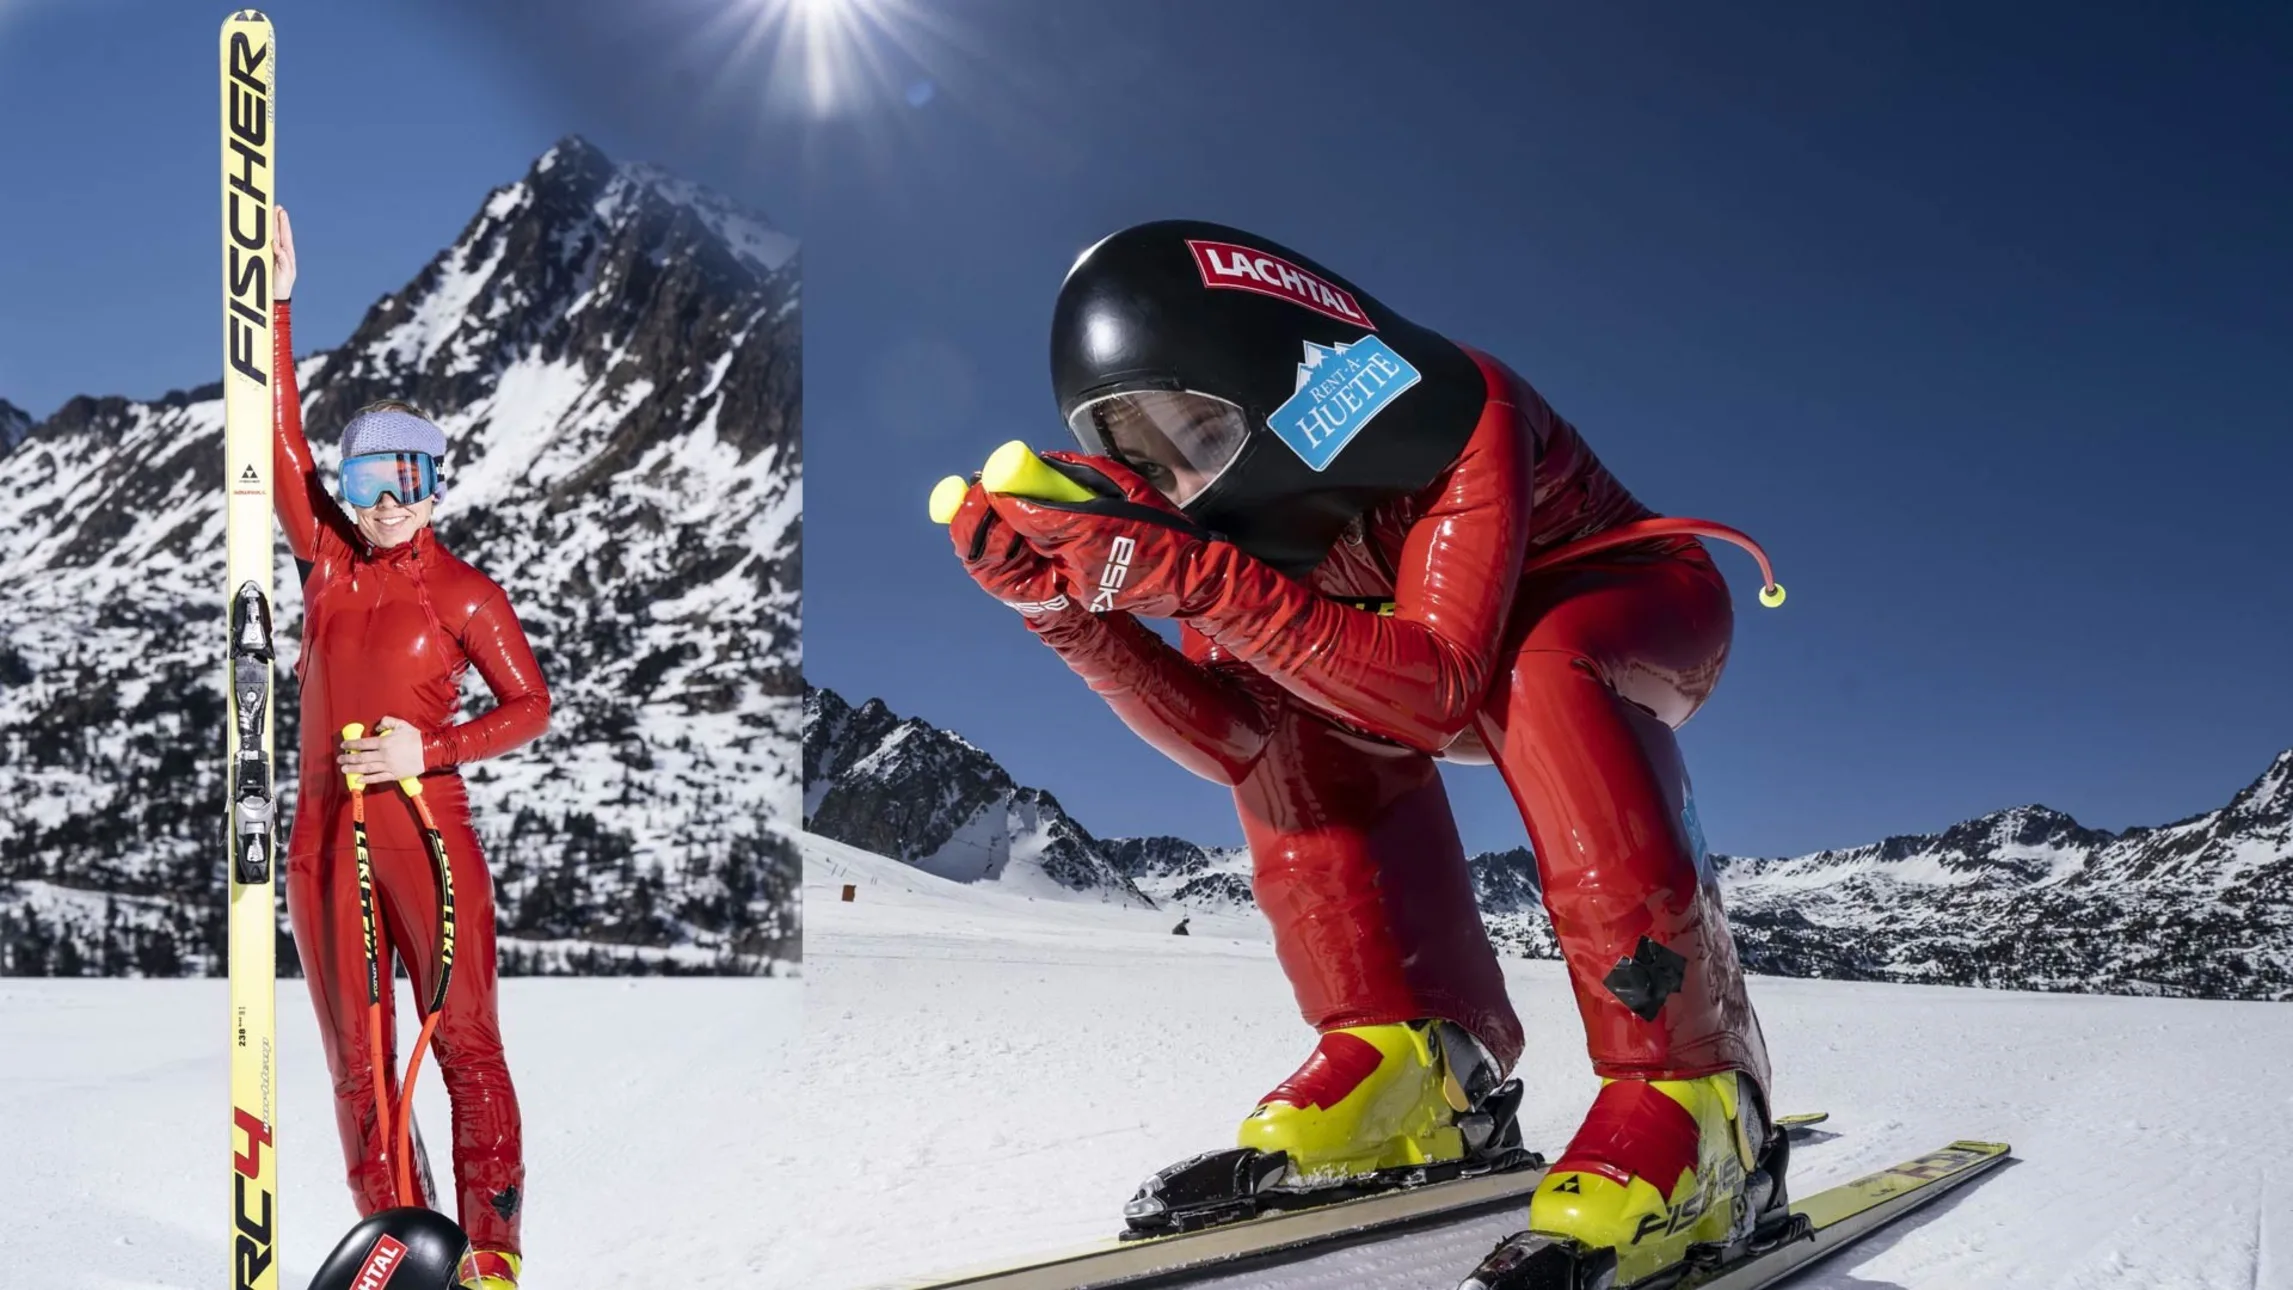 Спортивная лыжная дисциплина скоростной спуск — техника, история, особенности, лучшие трассы, снаряжение